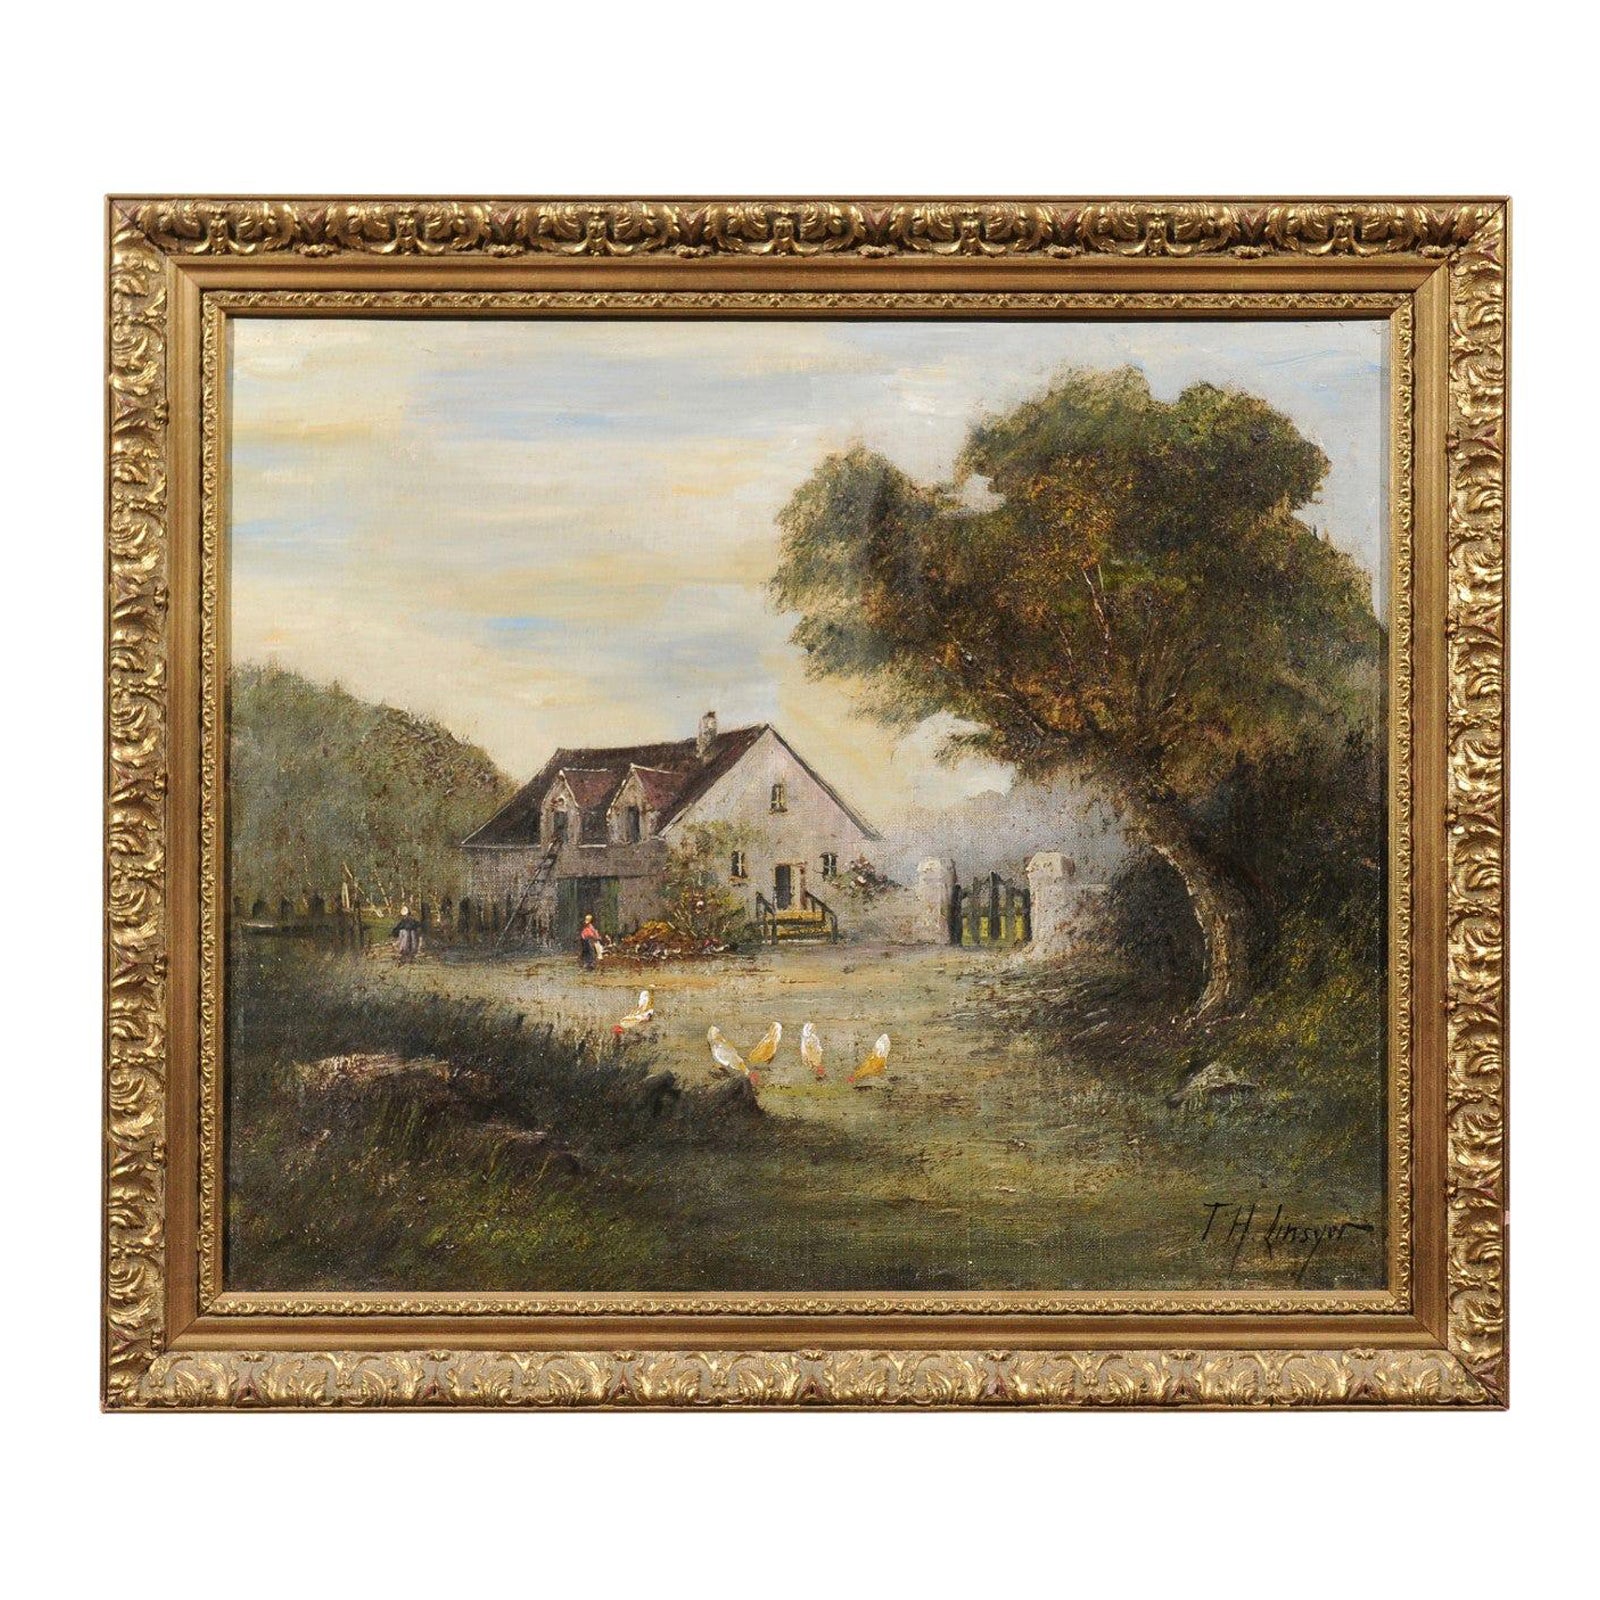 Pintura pastoral al óleo sobre lienzo enmarcada de la escuela francesa de Barbizon Firmada Th. Linsyer